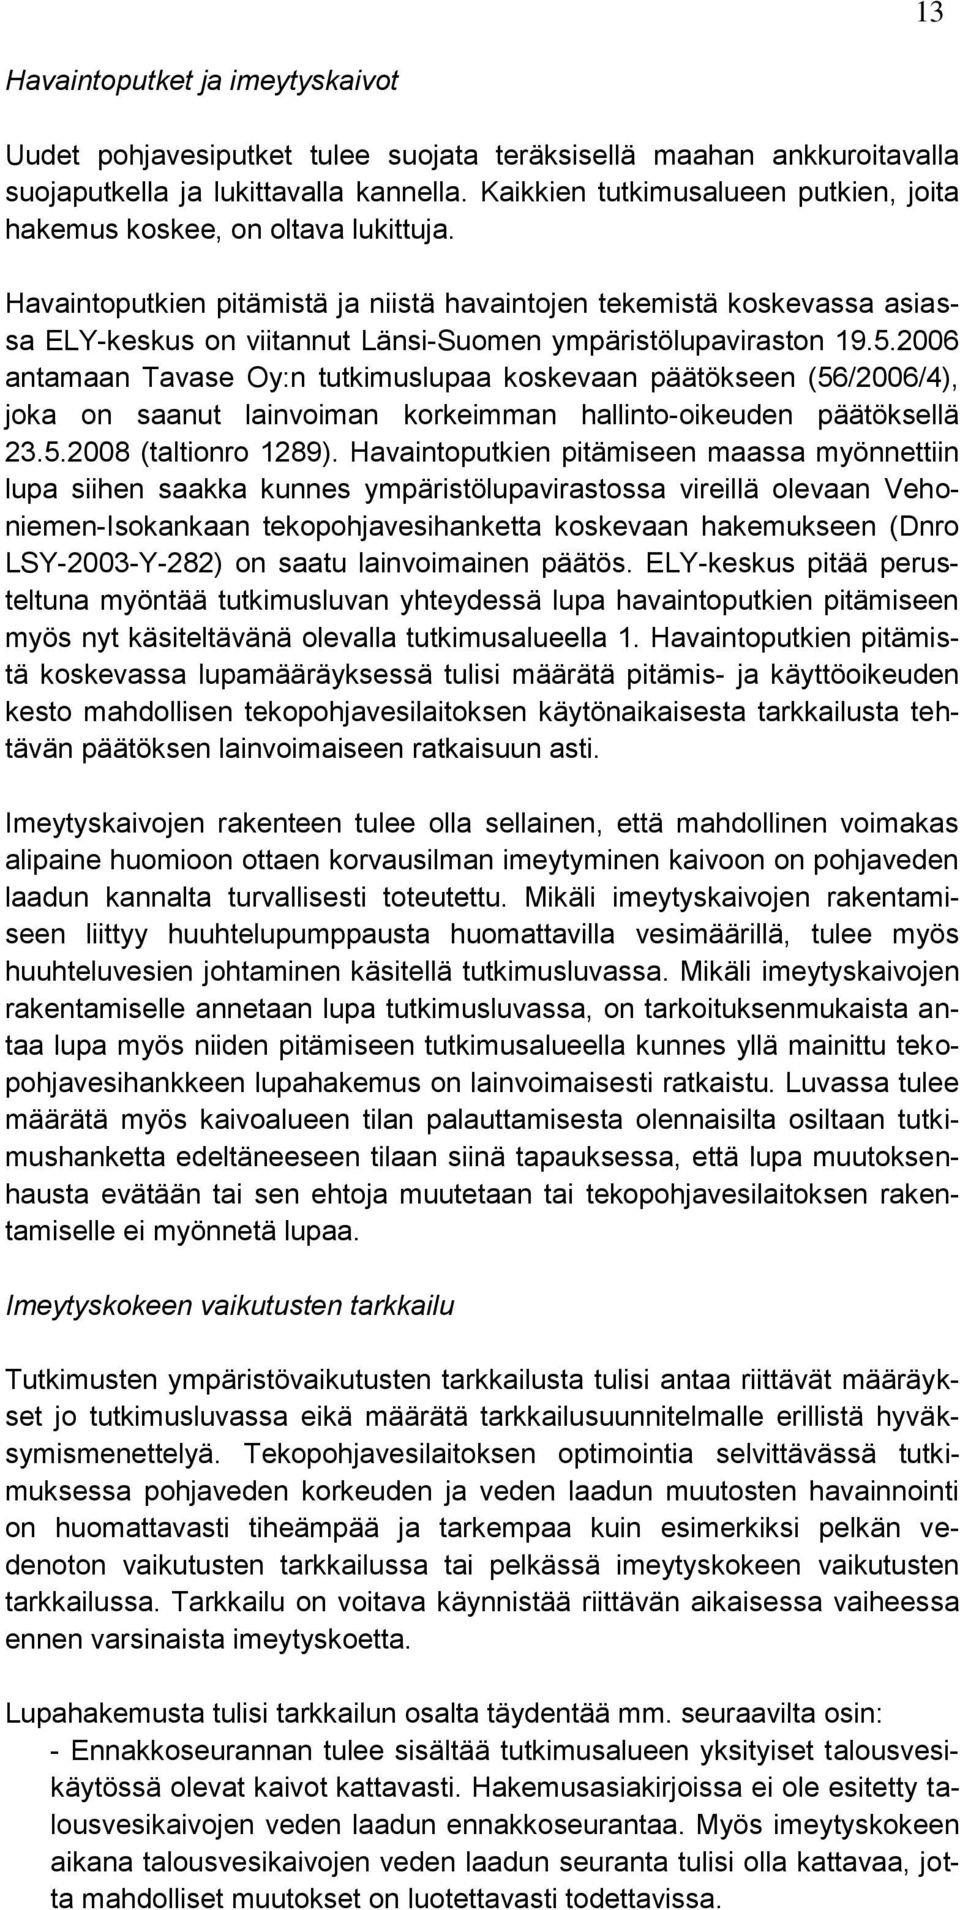 Havaintoputkien pitämistä ja niistä havaintojen tekemistä koskevassa asiassa ELY-keskus on viitannut Länsi-Suomen ympäristölupaviraston 19.5.